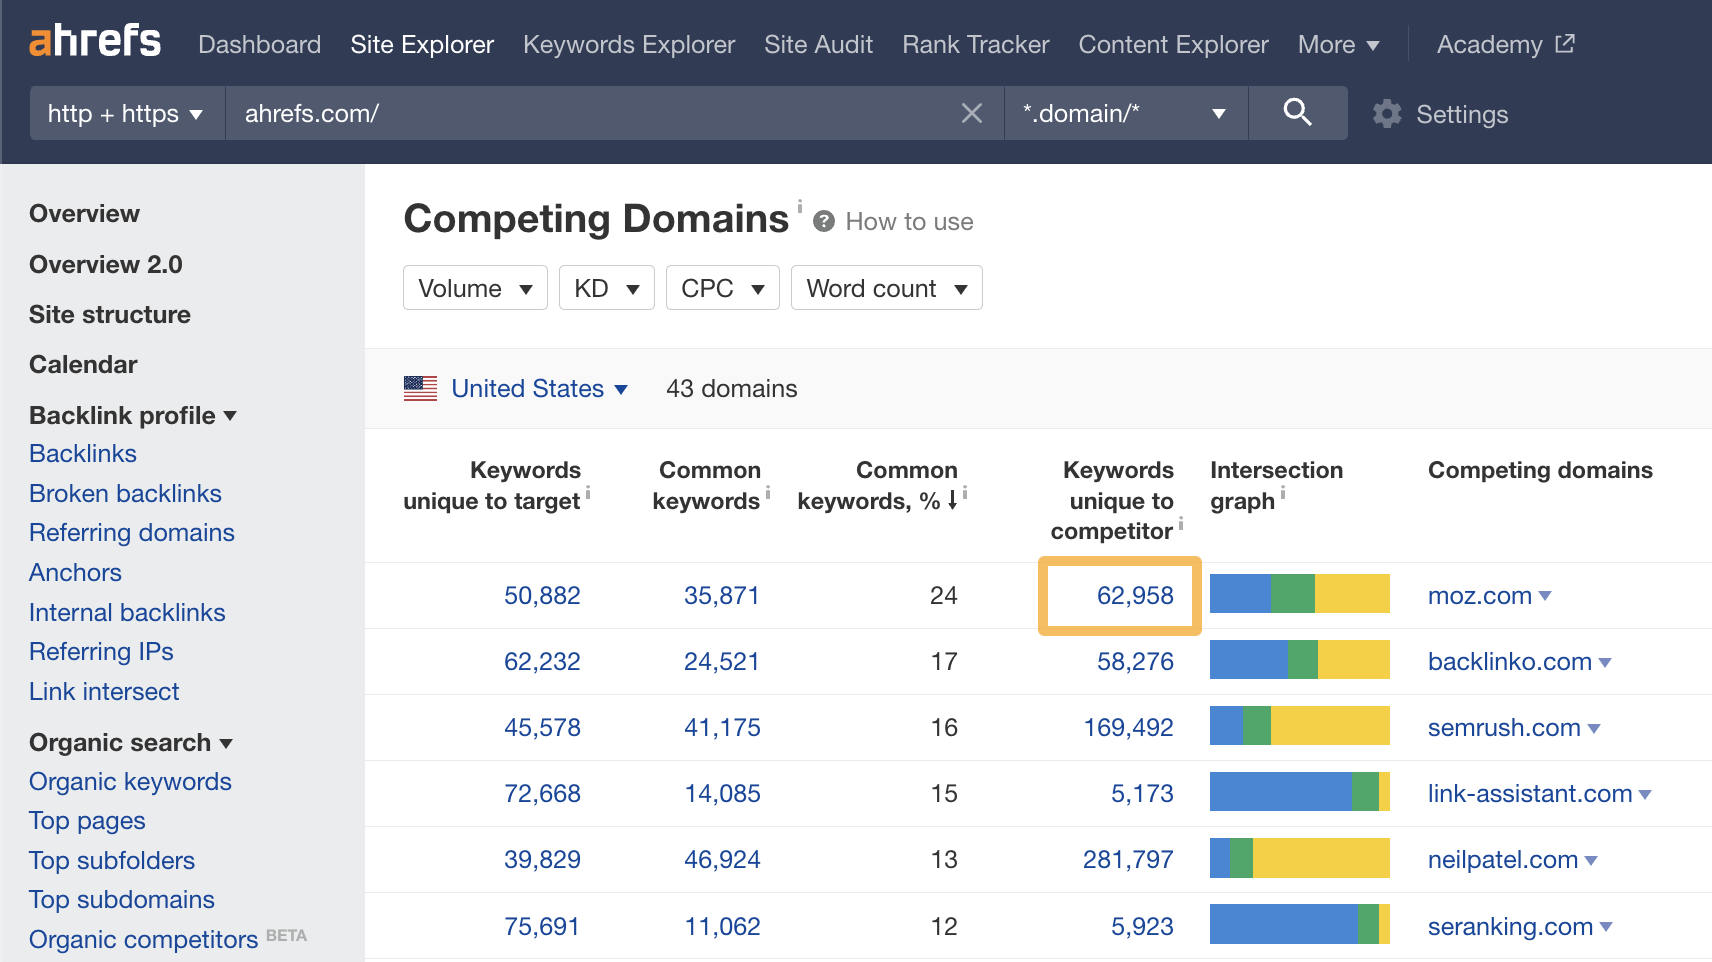 Competing Domains report for ahrefs.com, via Ahrefs' Site Explorer